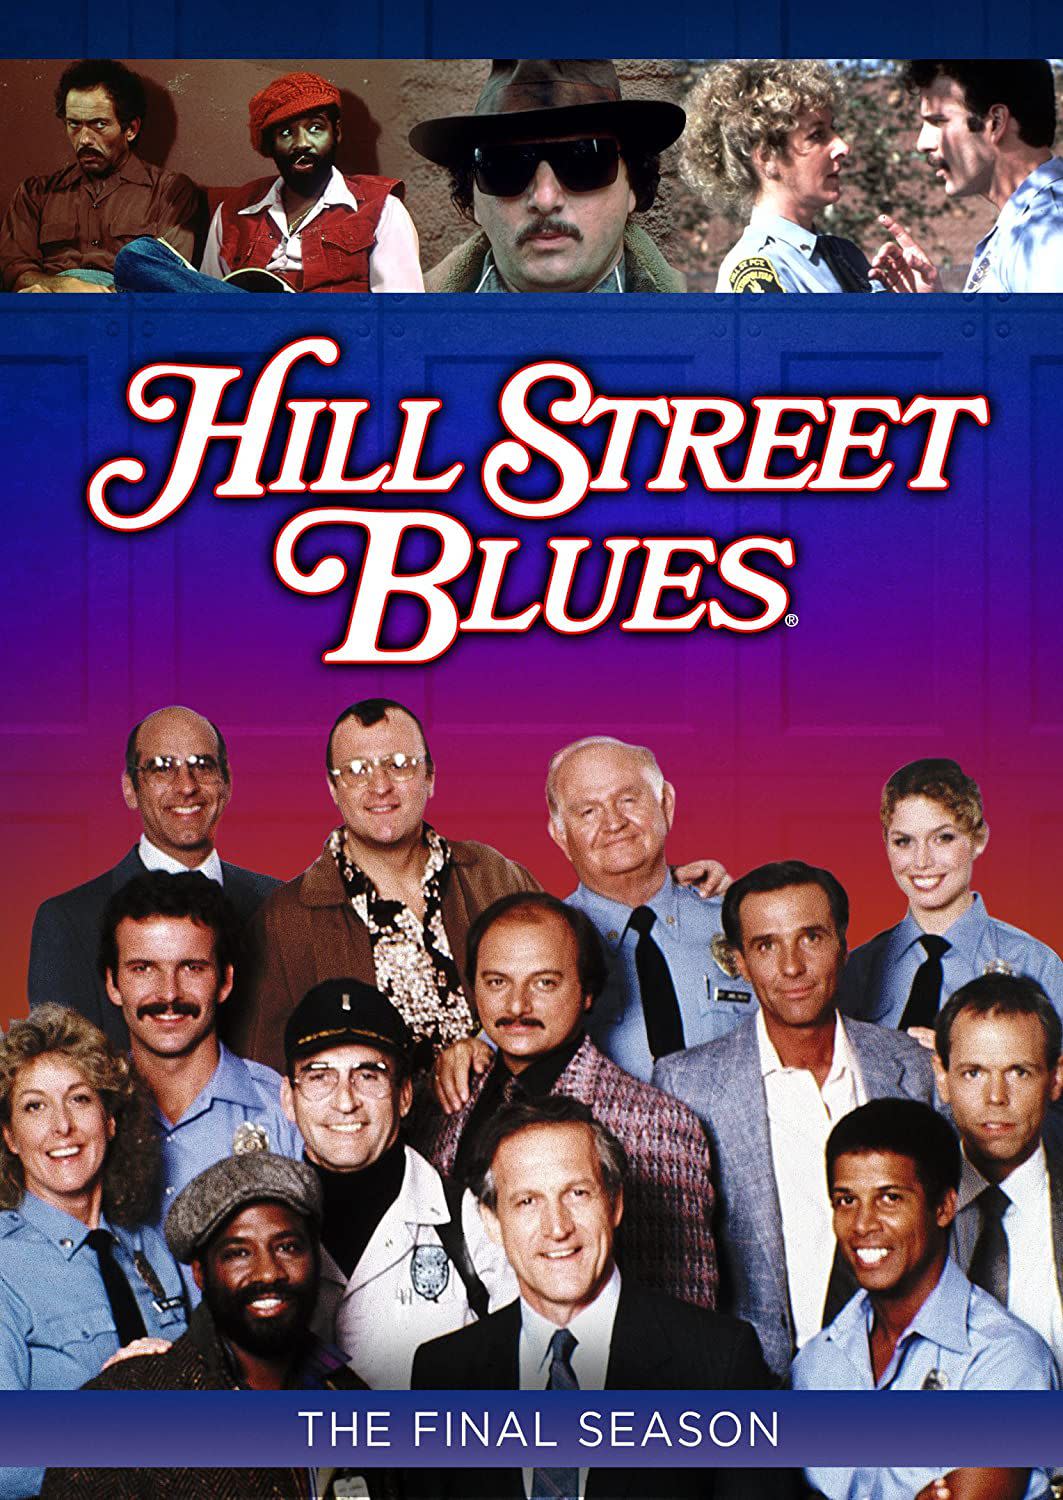 ‘Hill Street Blues